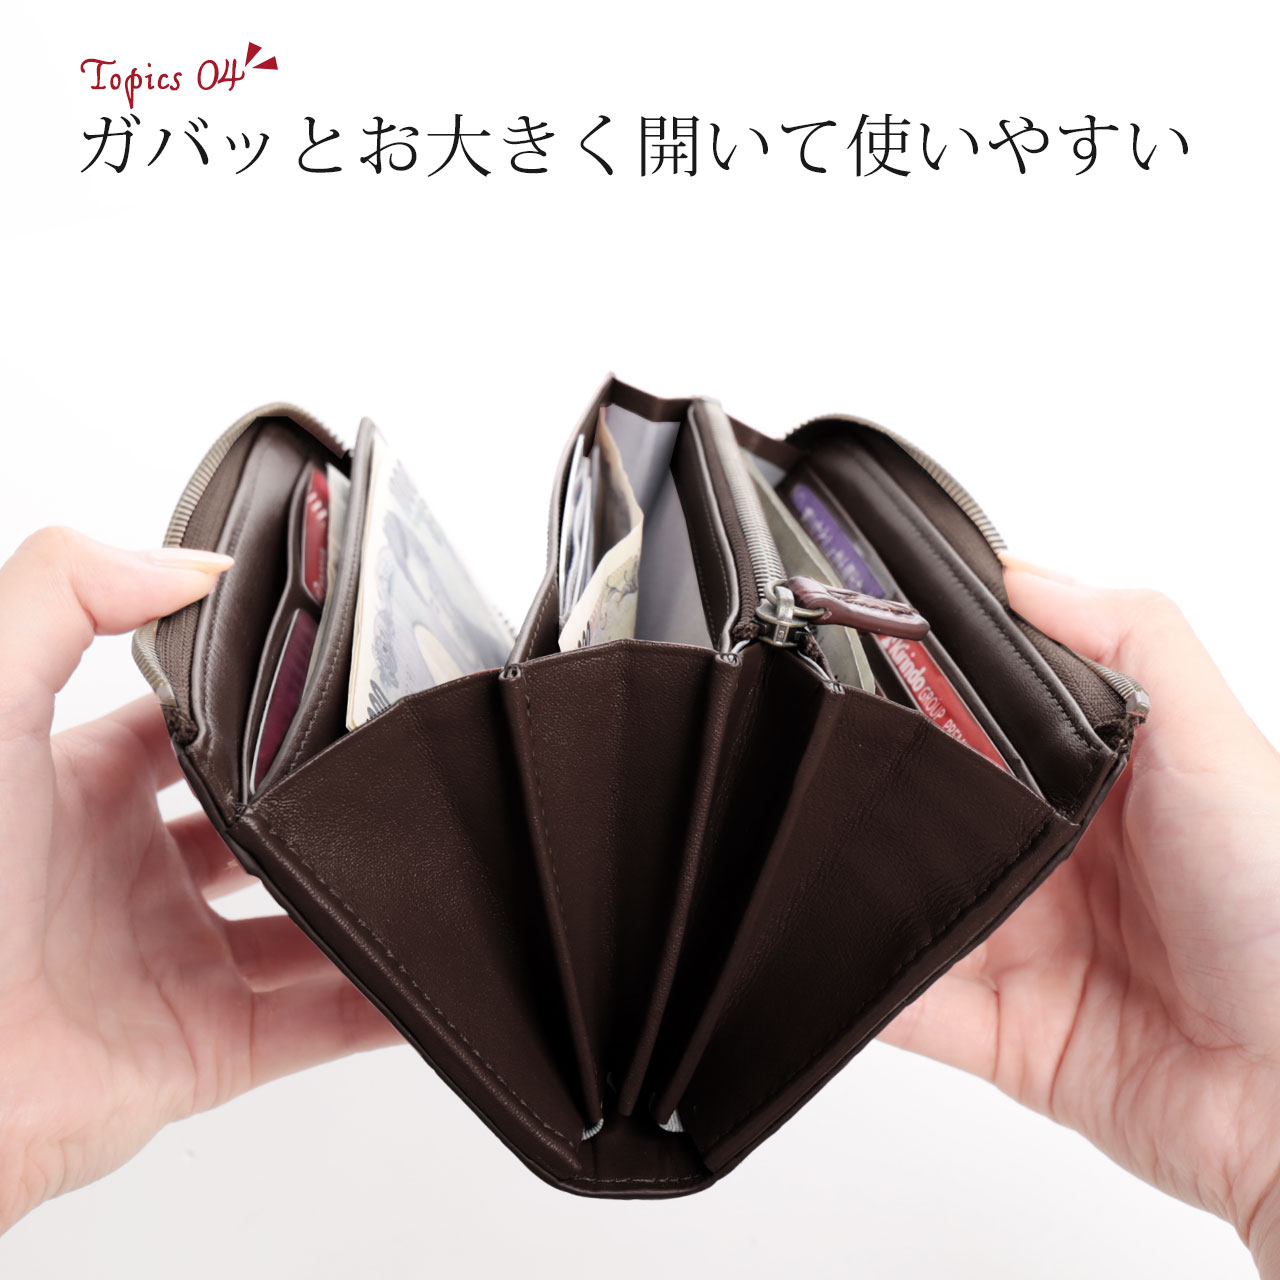 大きく開く 使いやすい 機能的 財布